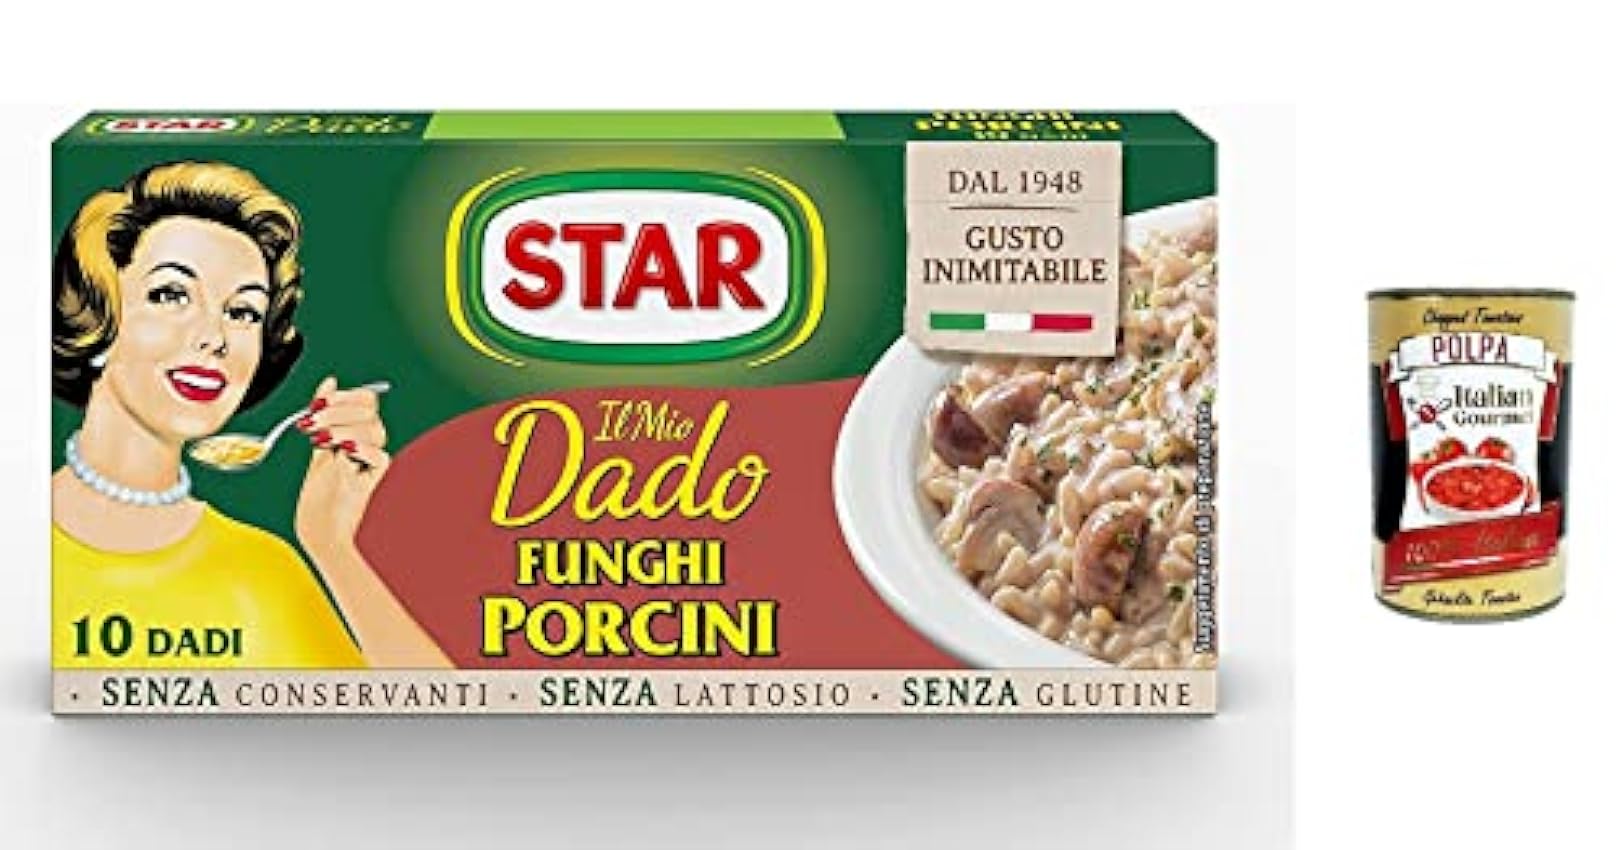 Star Dado Funghi Porcini Brodo Lot de 12 cubes de soupe